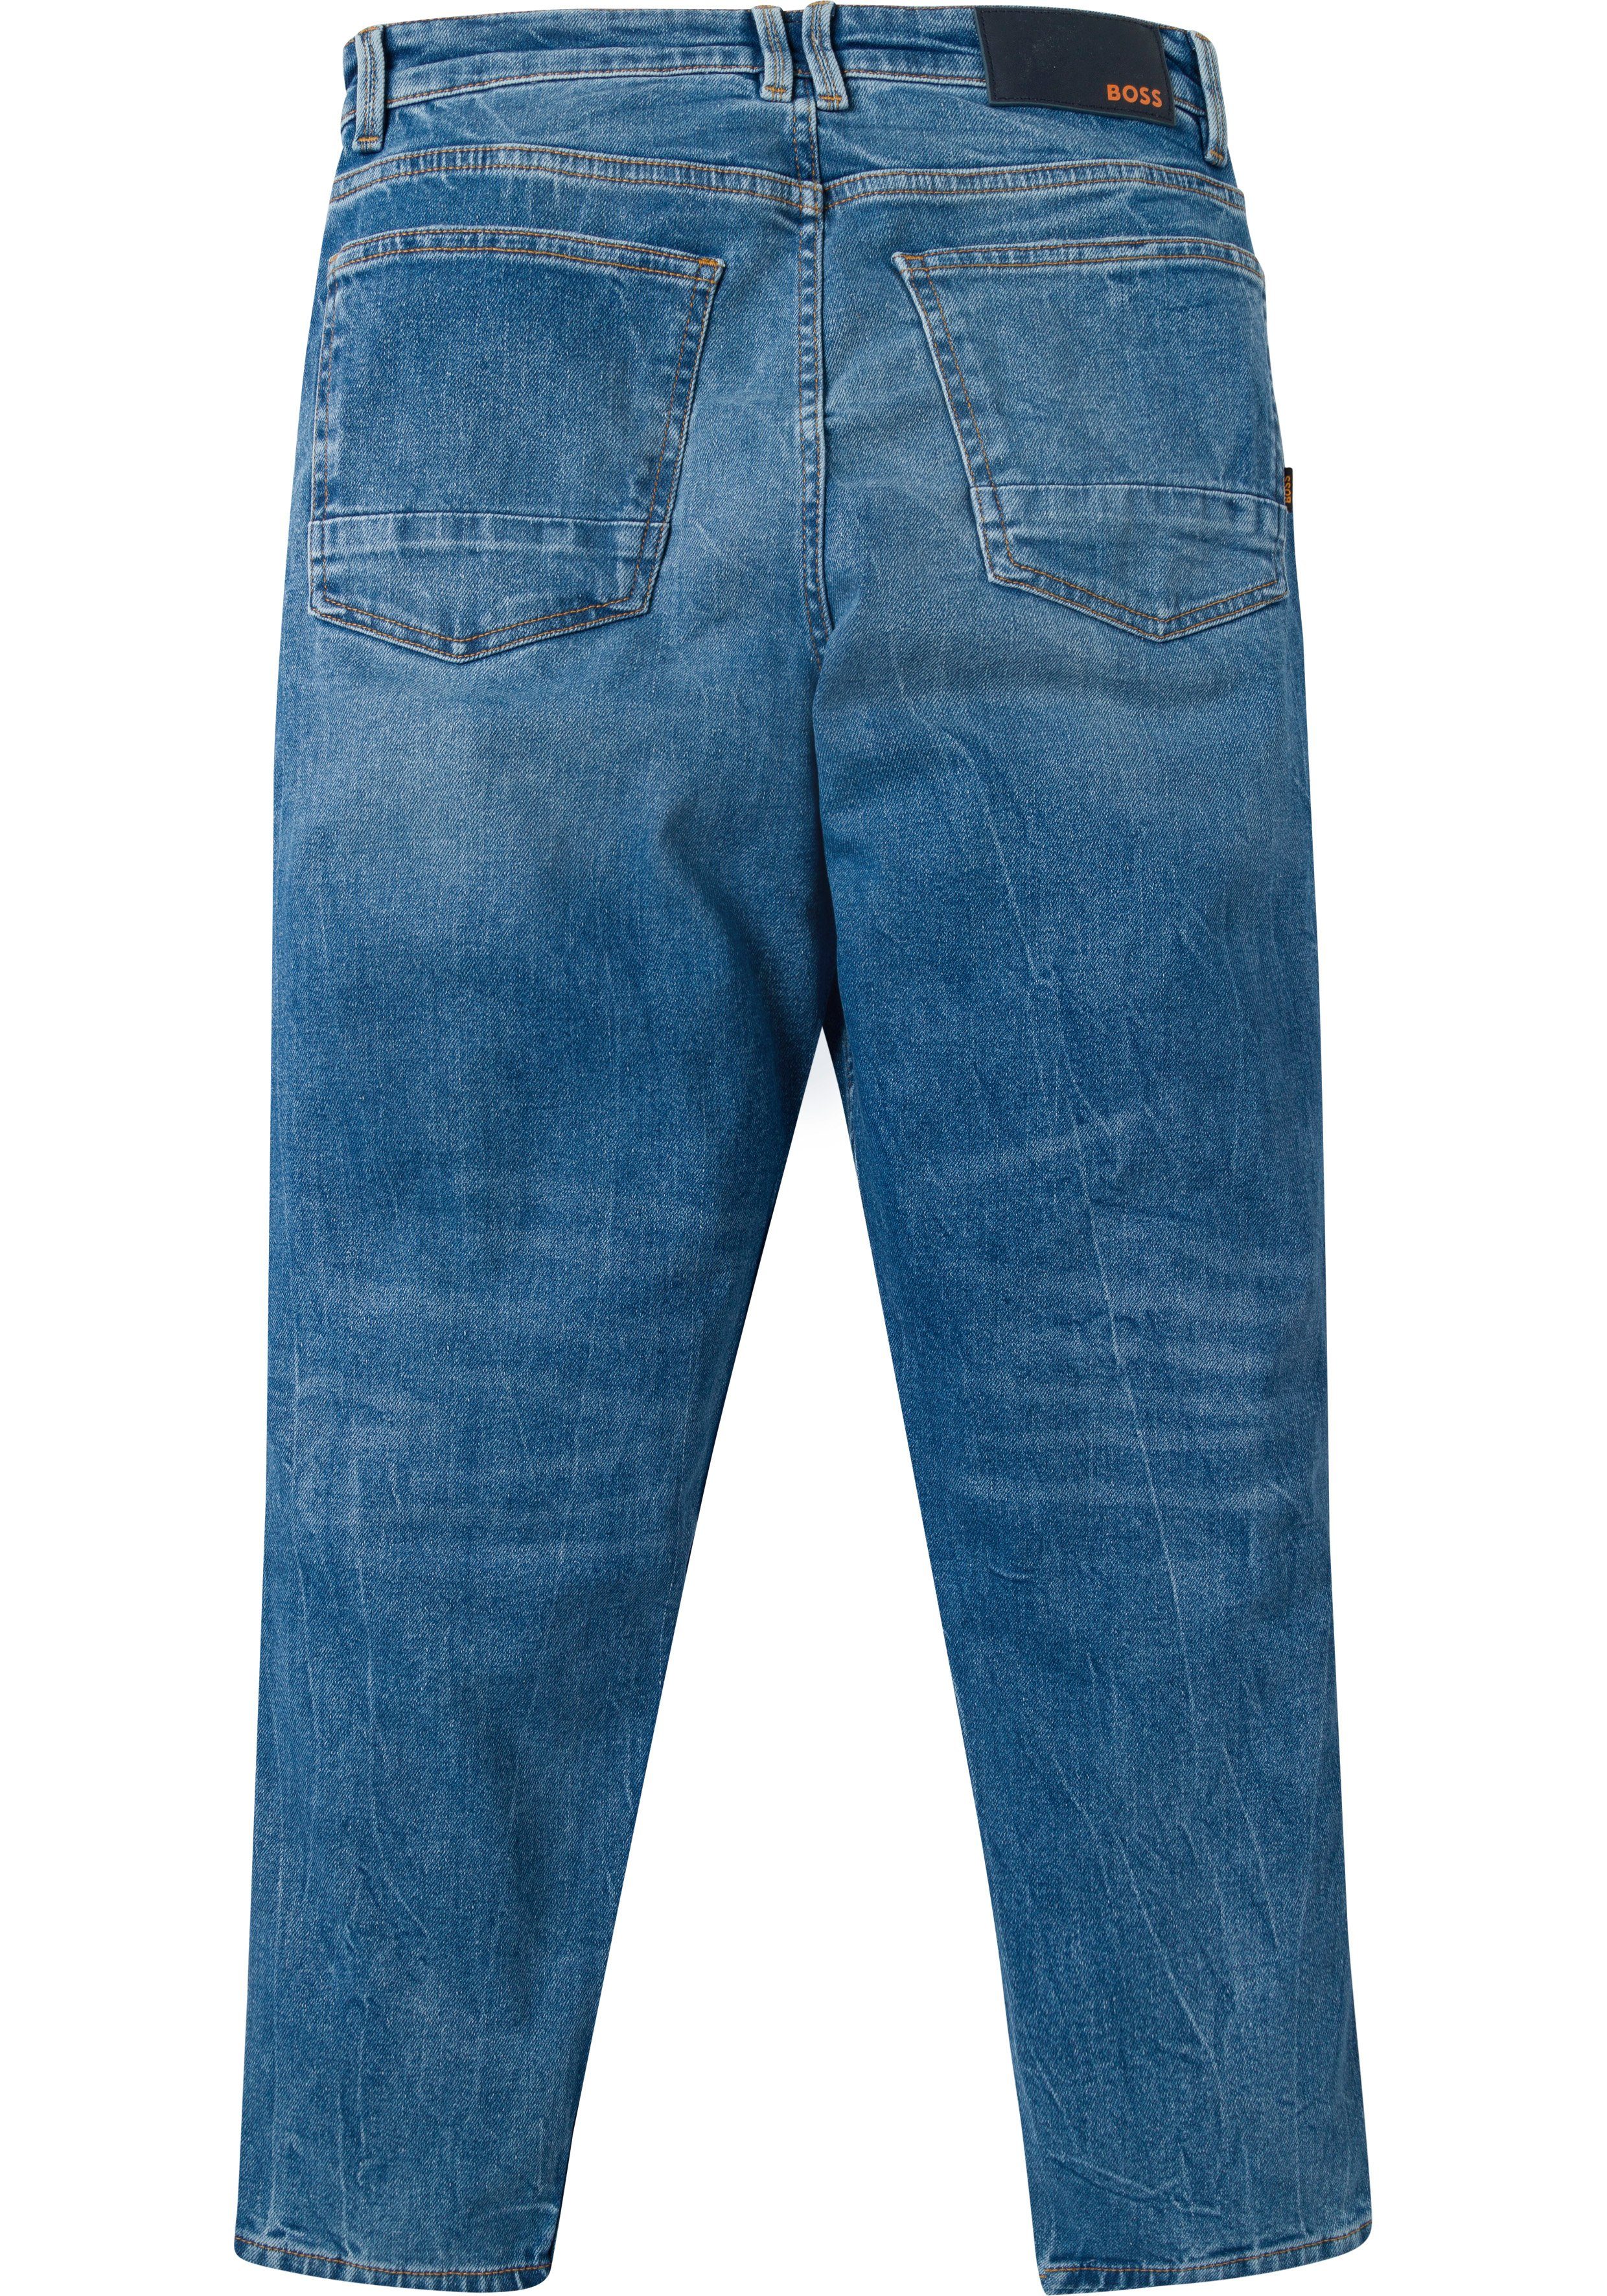 am Münzfach BOSS BOSS Plakette mit Tapered-fit-Jeans ORANGE dark denim blue